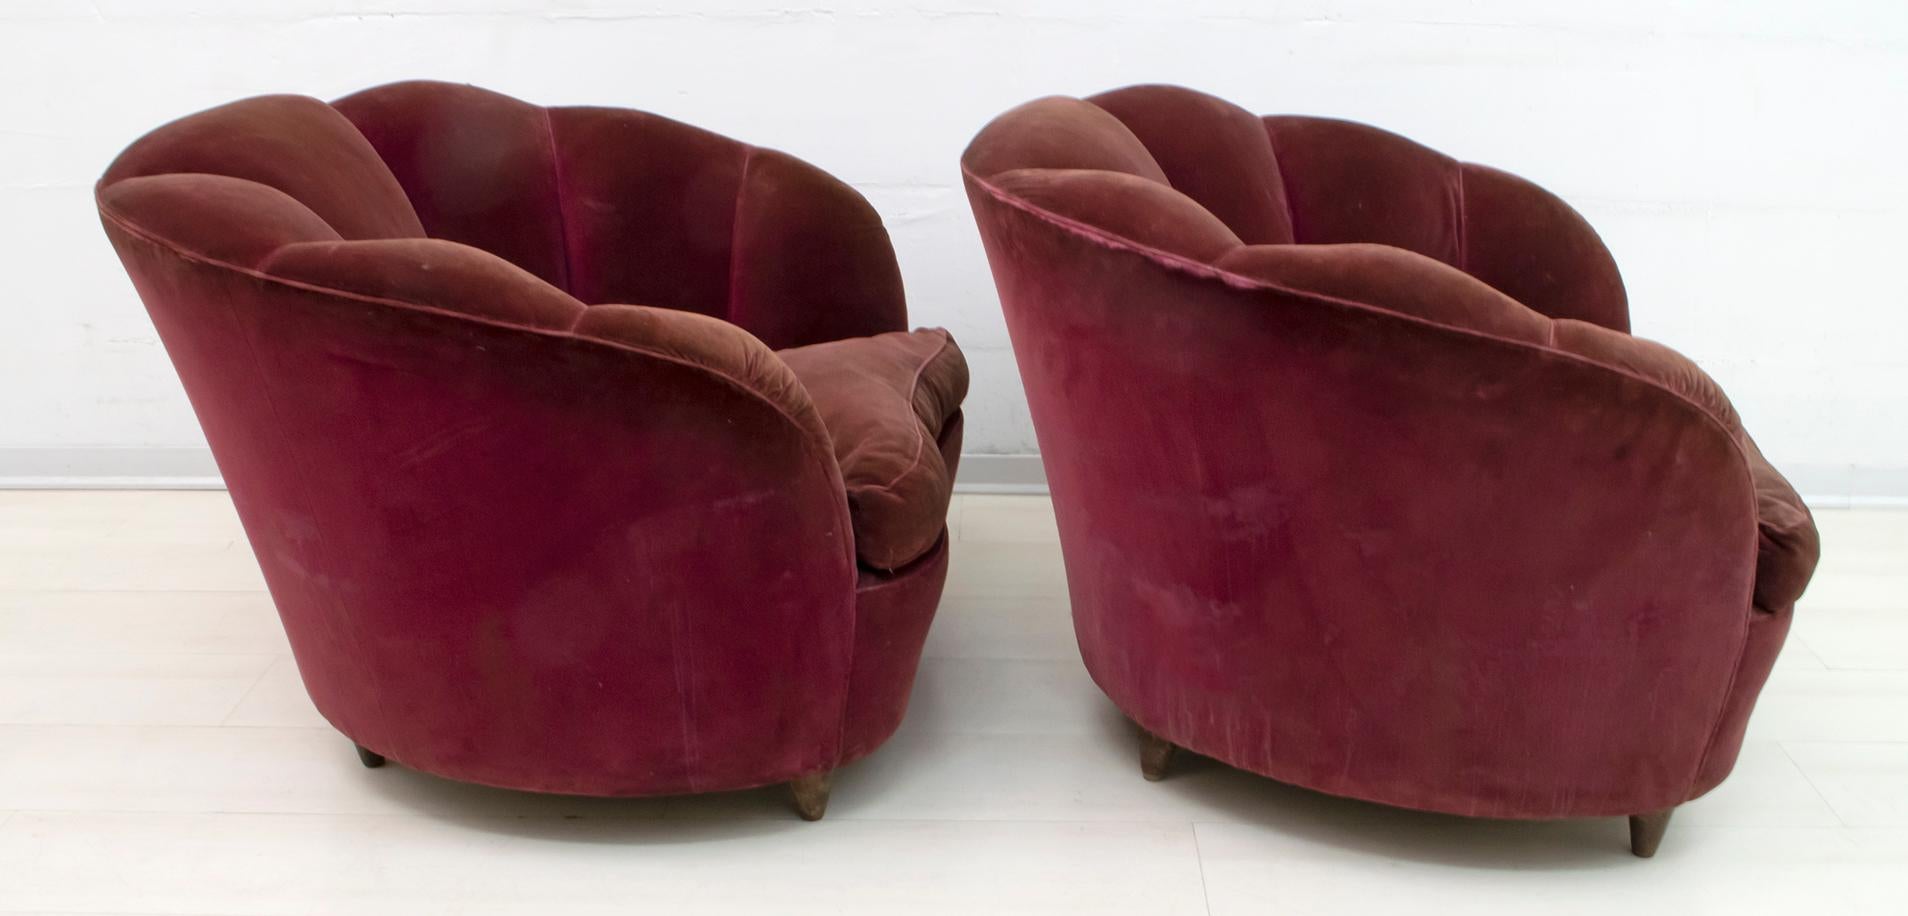 Gio Ponti Midcentury Rare Italian Curved Armchairs 